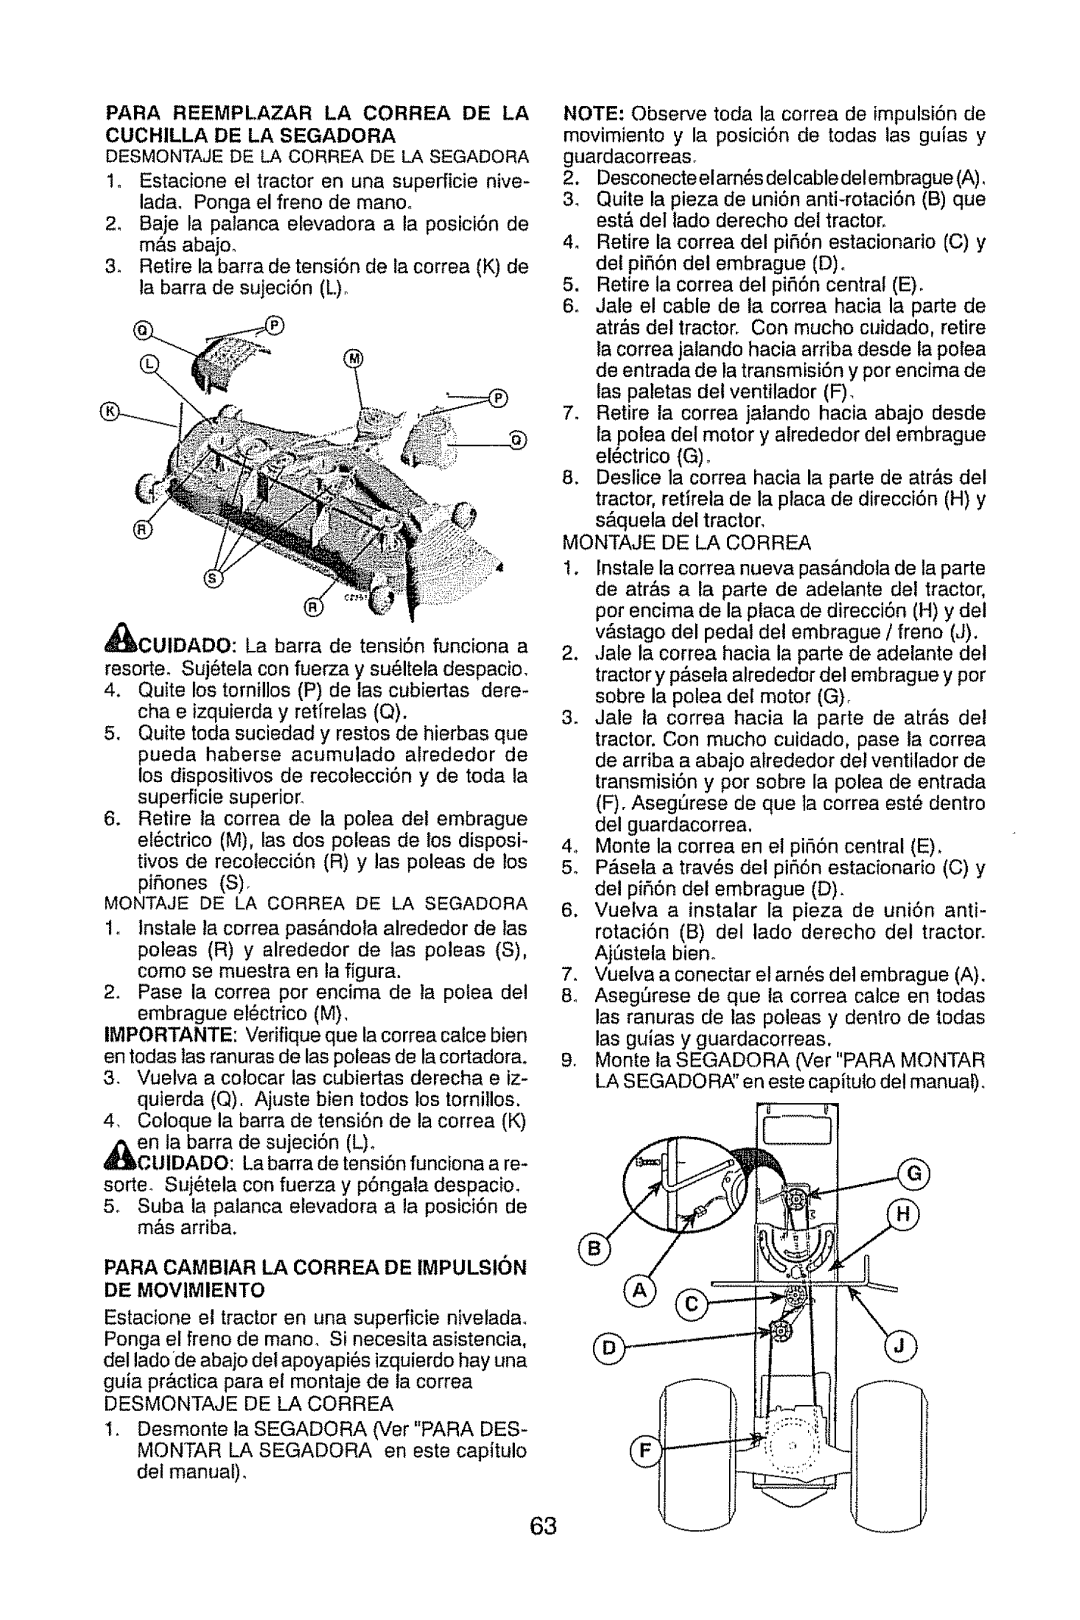 Craftsman 917.289470 manual Para Cambiar La Correa De Impulsion De Movimiento 